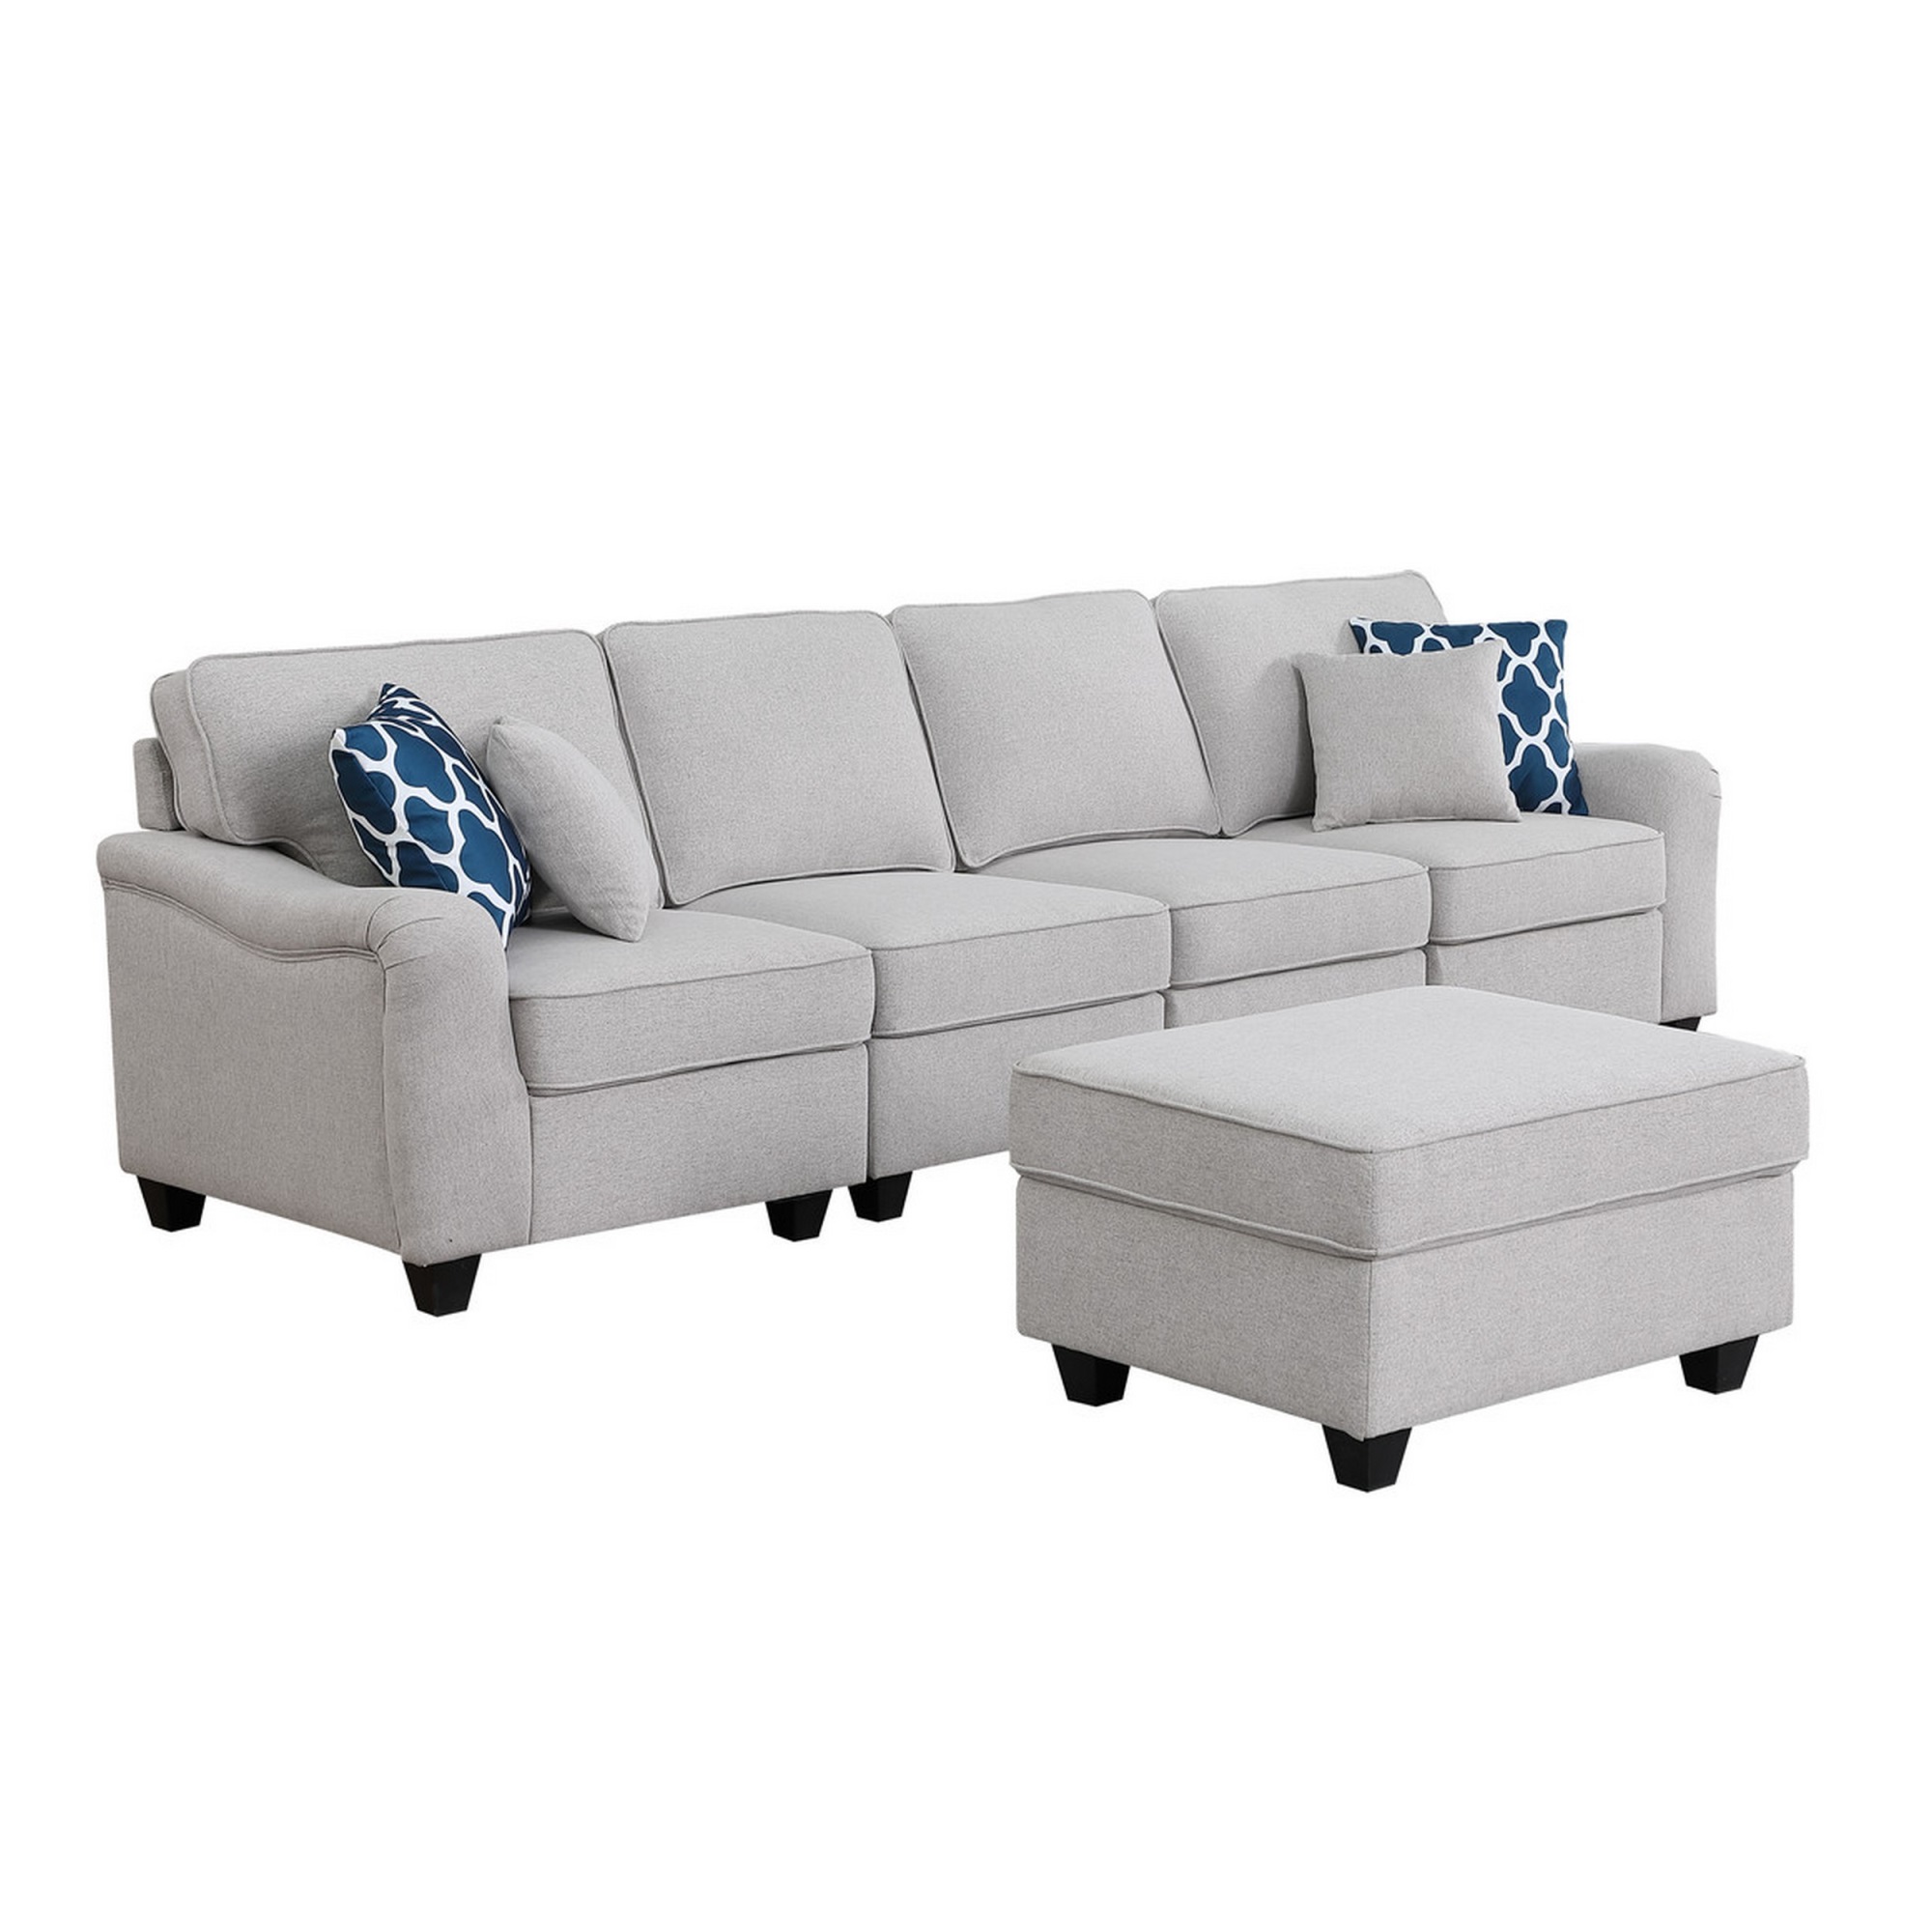 Benjara Lulu 119 Inch Sectional 5 Seater Sofa, Ottoman, 4 Pillows, Light Gray Linen